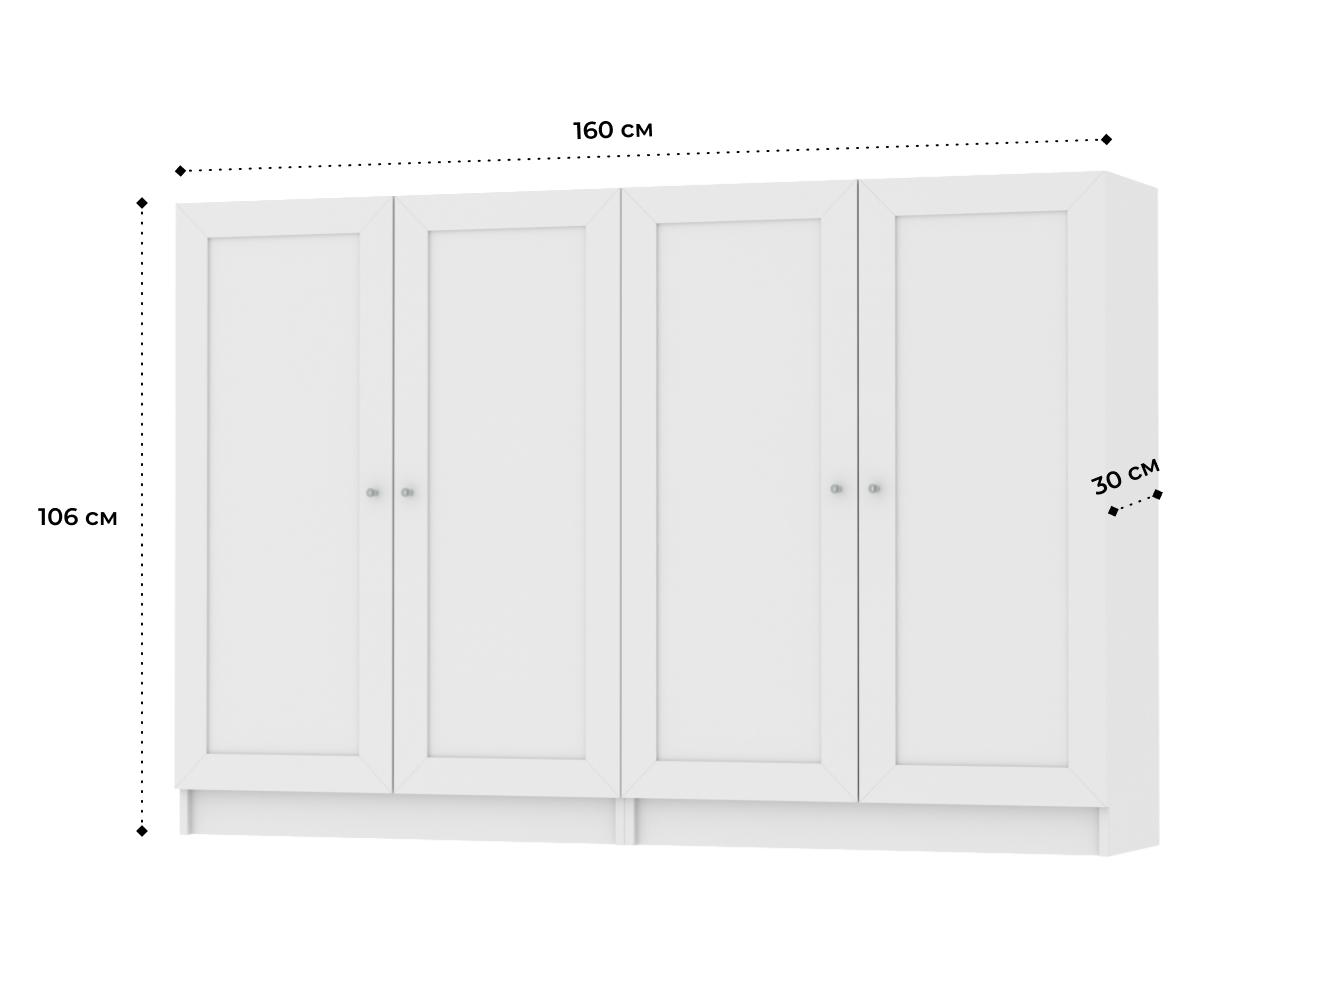  Комод Билли 216 white ИКЕА (IKEA) изображение товара